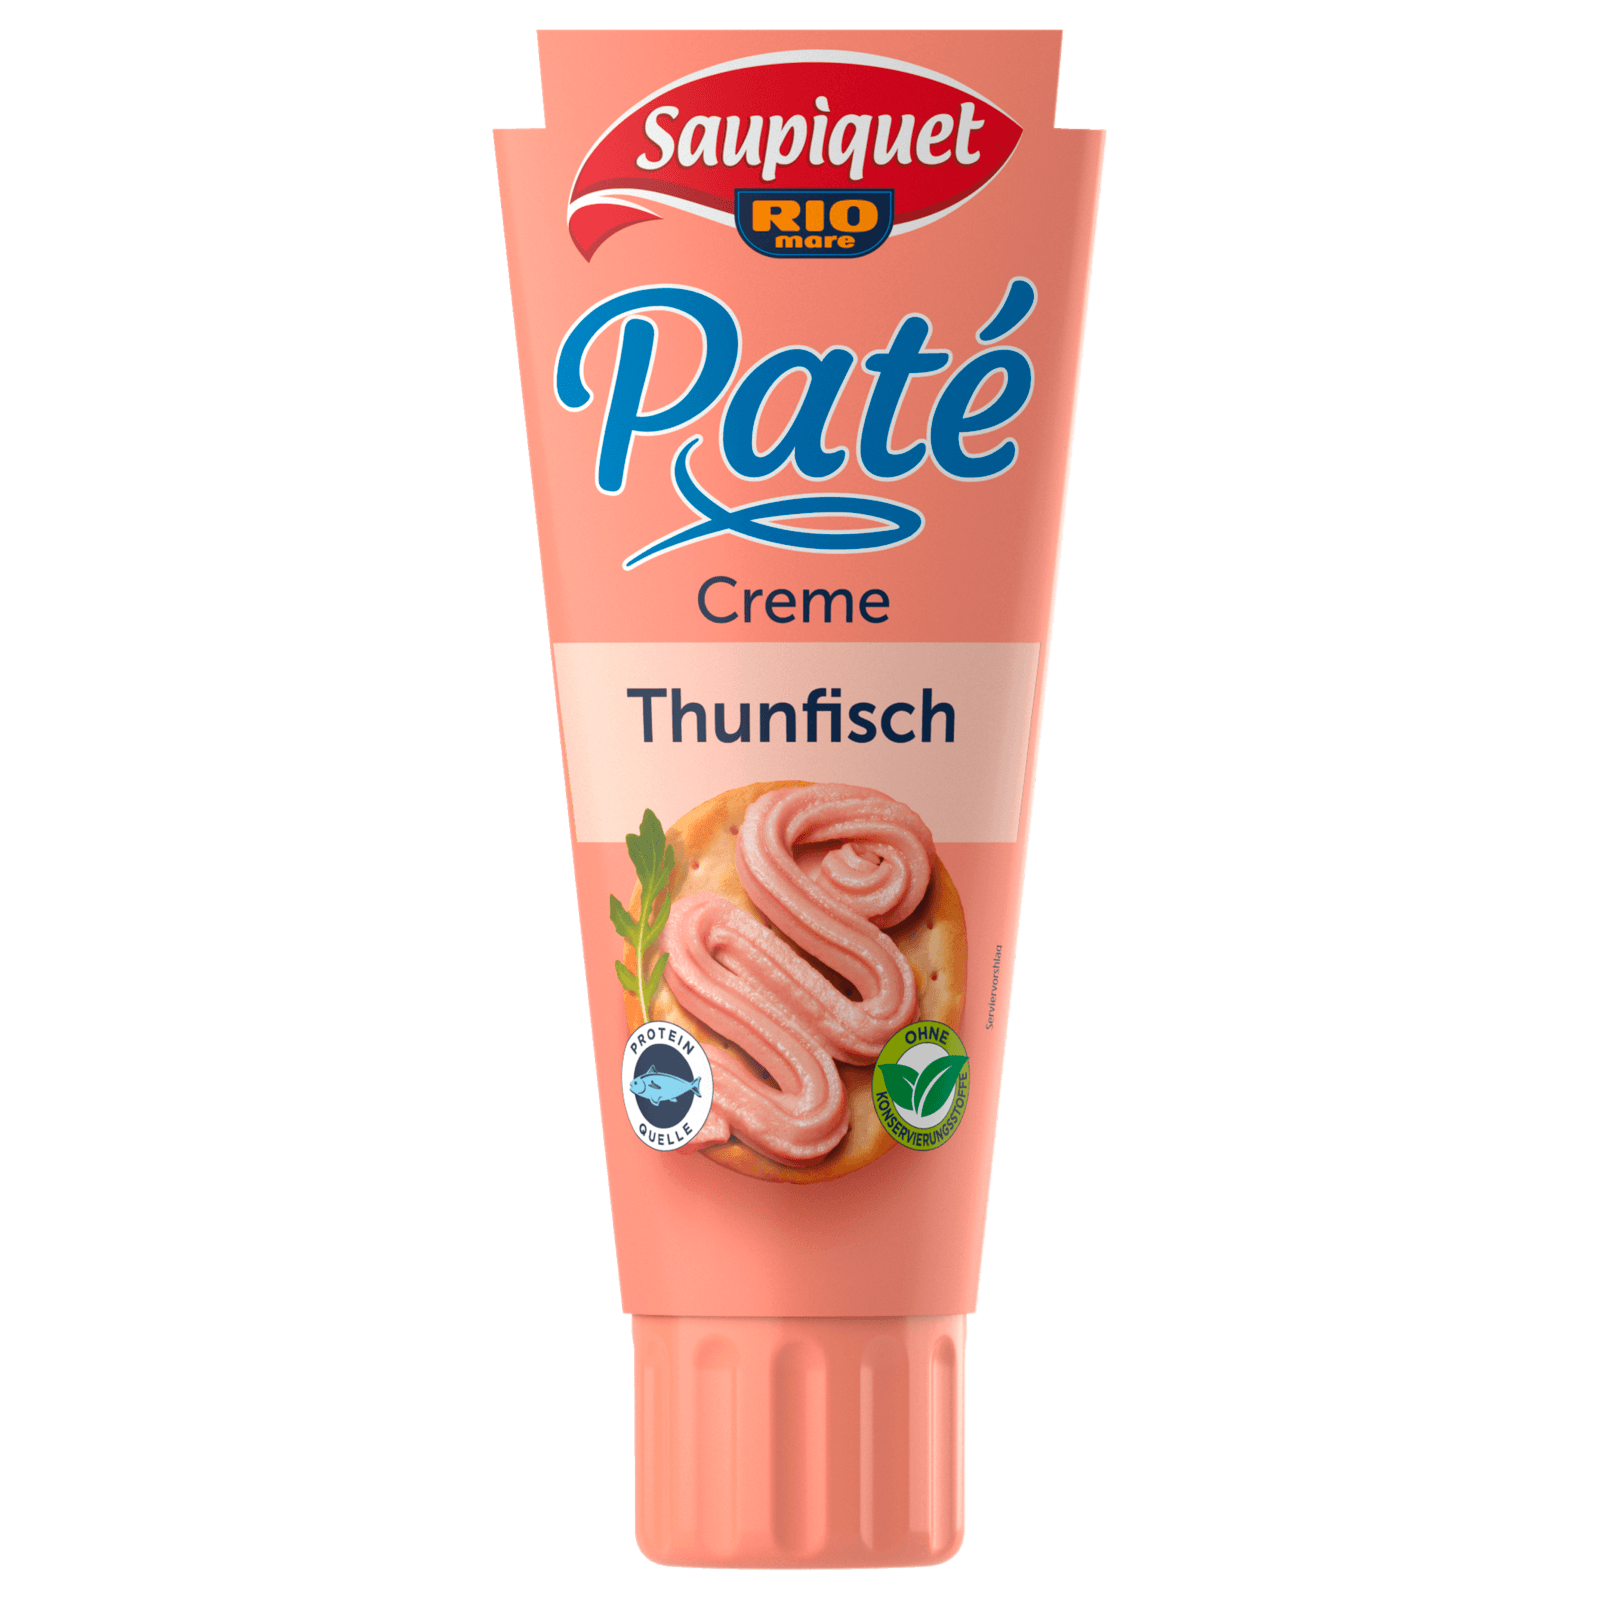 Saupiquet Paté Creme Thunfisch 100g